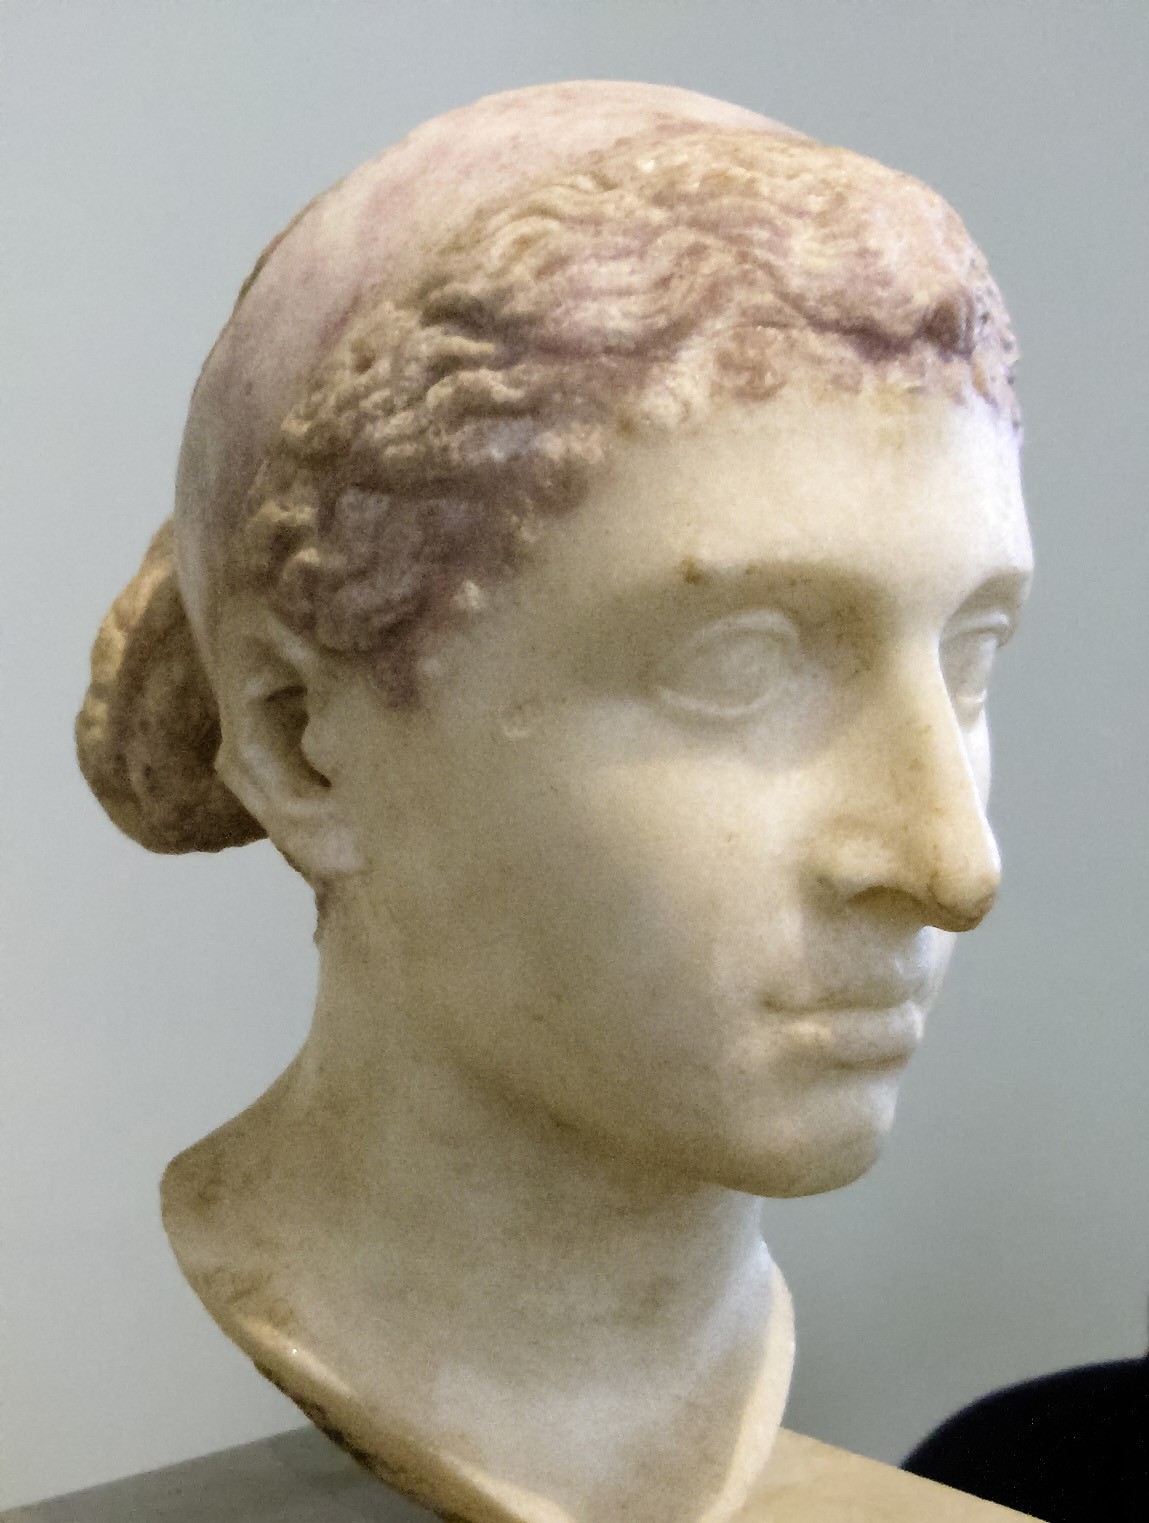 Busto que acredita-se ser de Cleópatra, exposto em museu em Berlim, na Alemanha (Foto: Wikimedia/Louis le Grand )